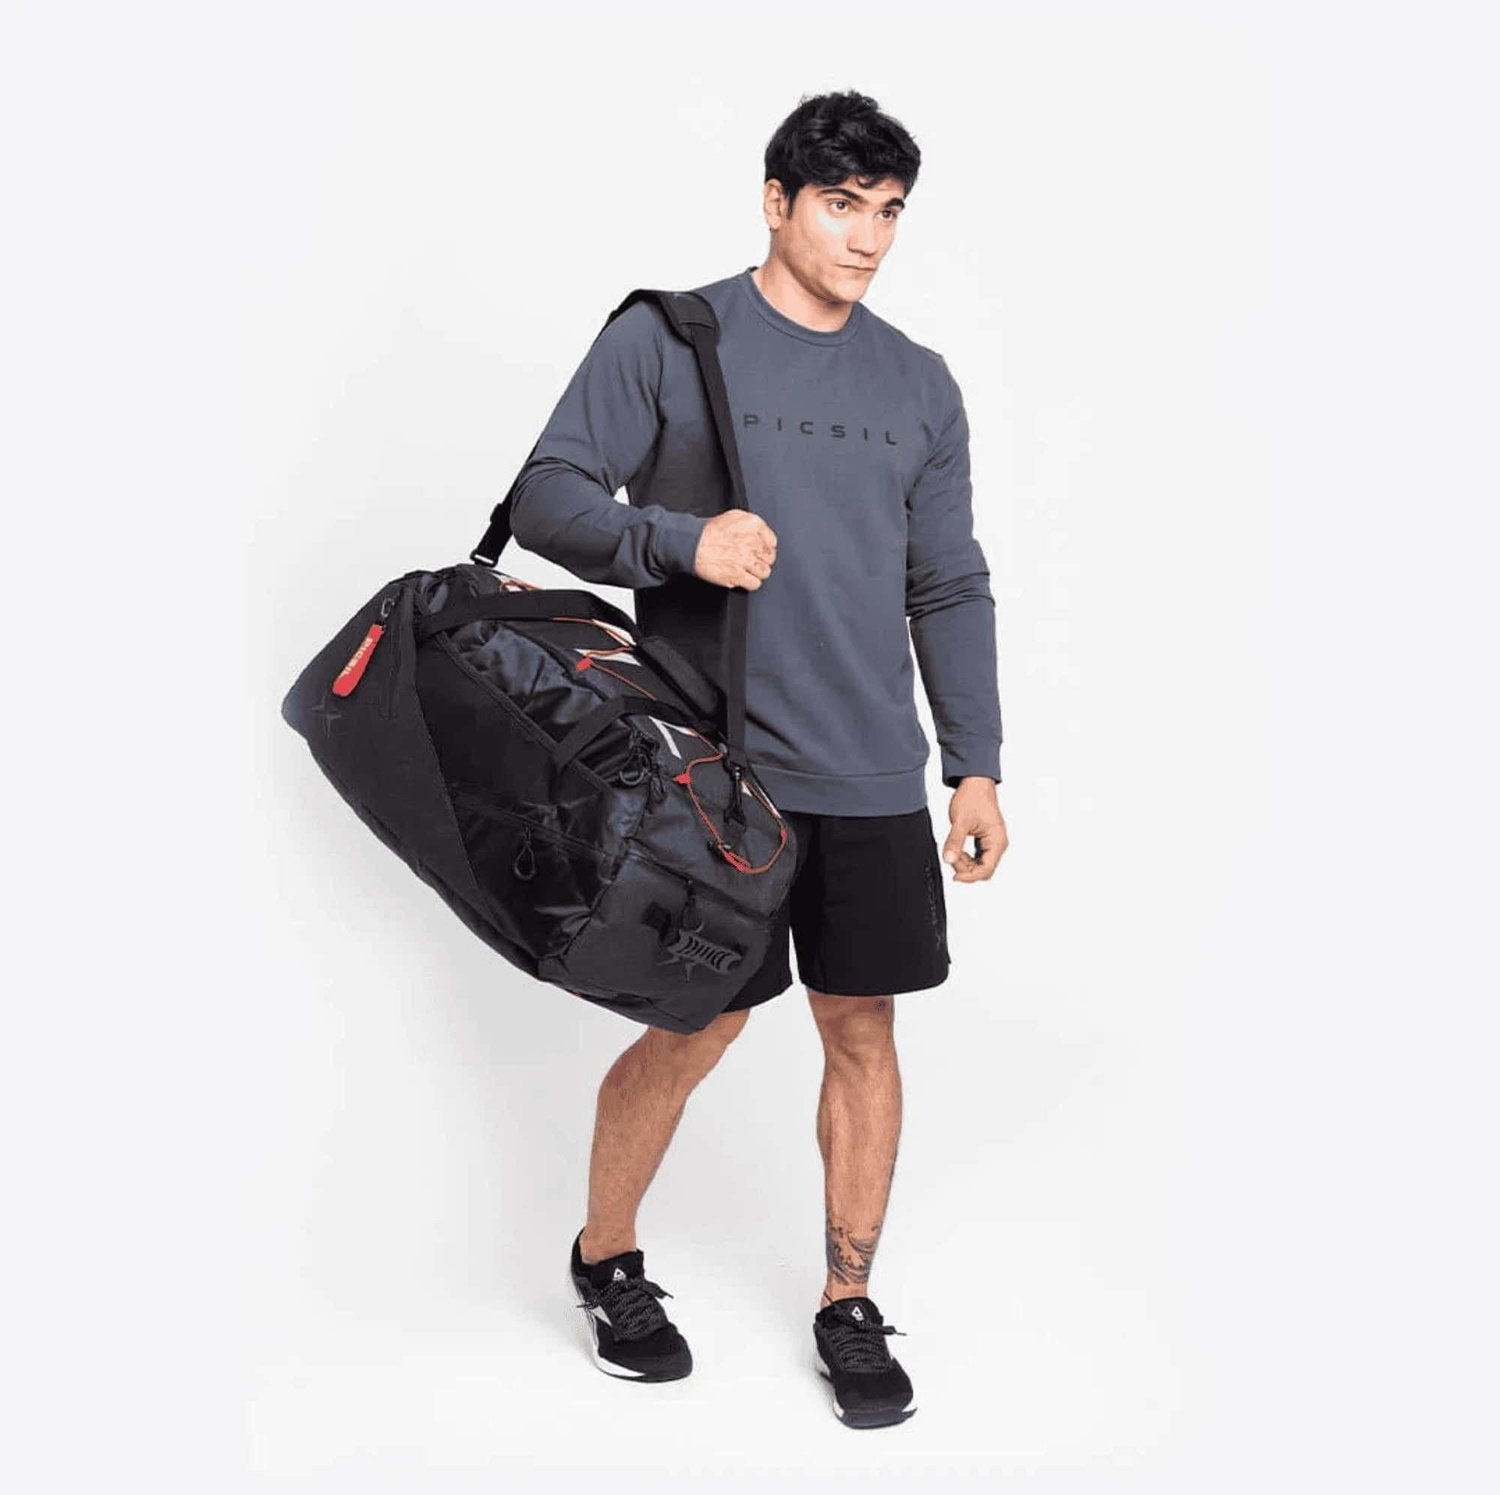 PicSil Duffle Backpack (45L) Schwarz kaufen bei HighPowered.ch